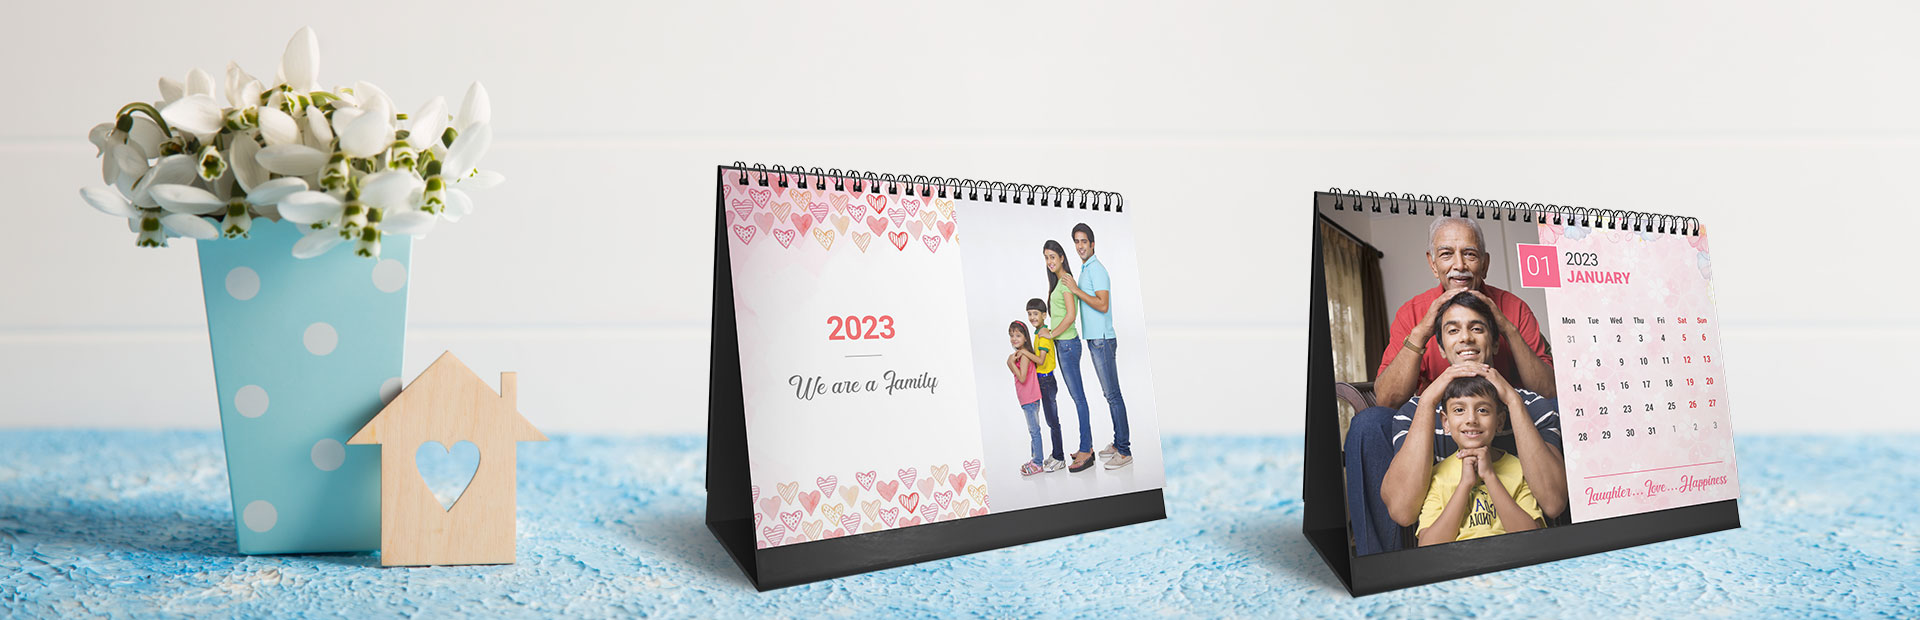 Lovely Family Photo Calendars Online